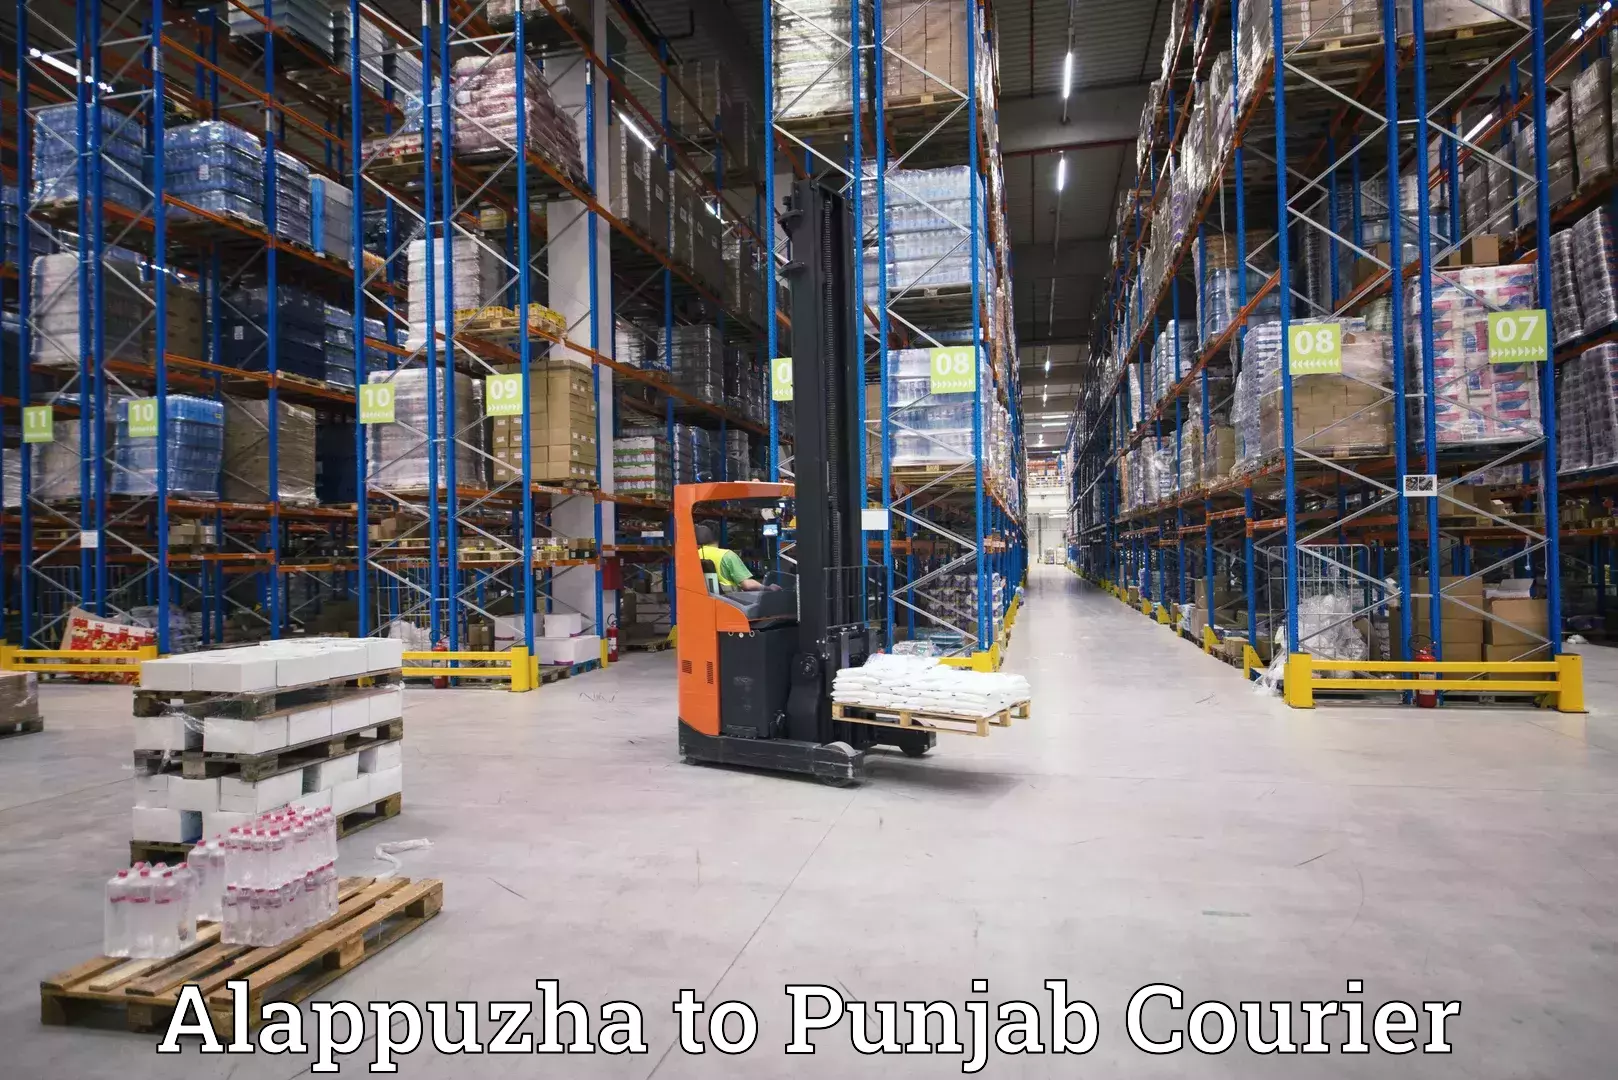 Smart shipping technology Alappuzha to Pathankot